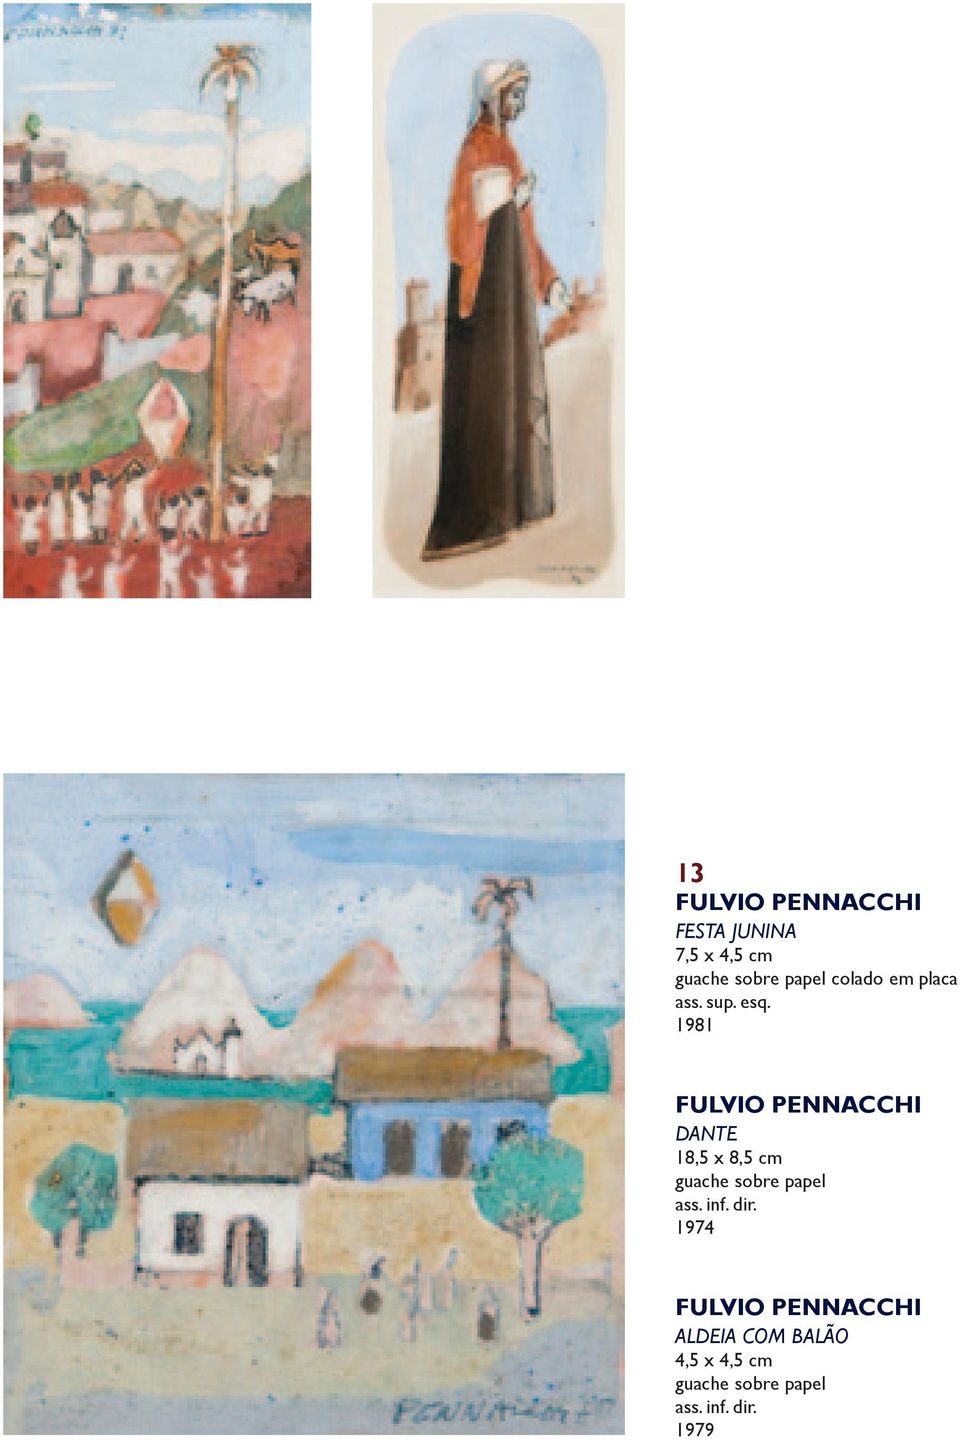 1981 Fulvio Pennacchi Dante 18,5 x 8,5 cm guache sobre